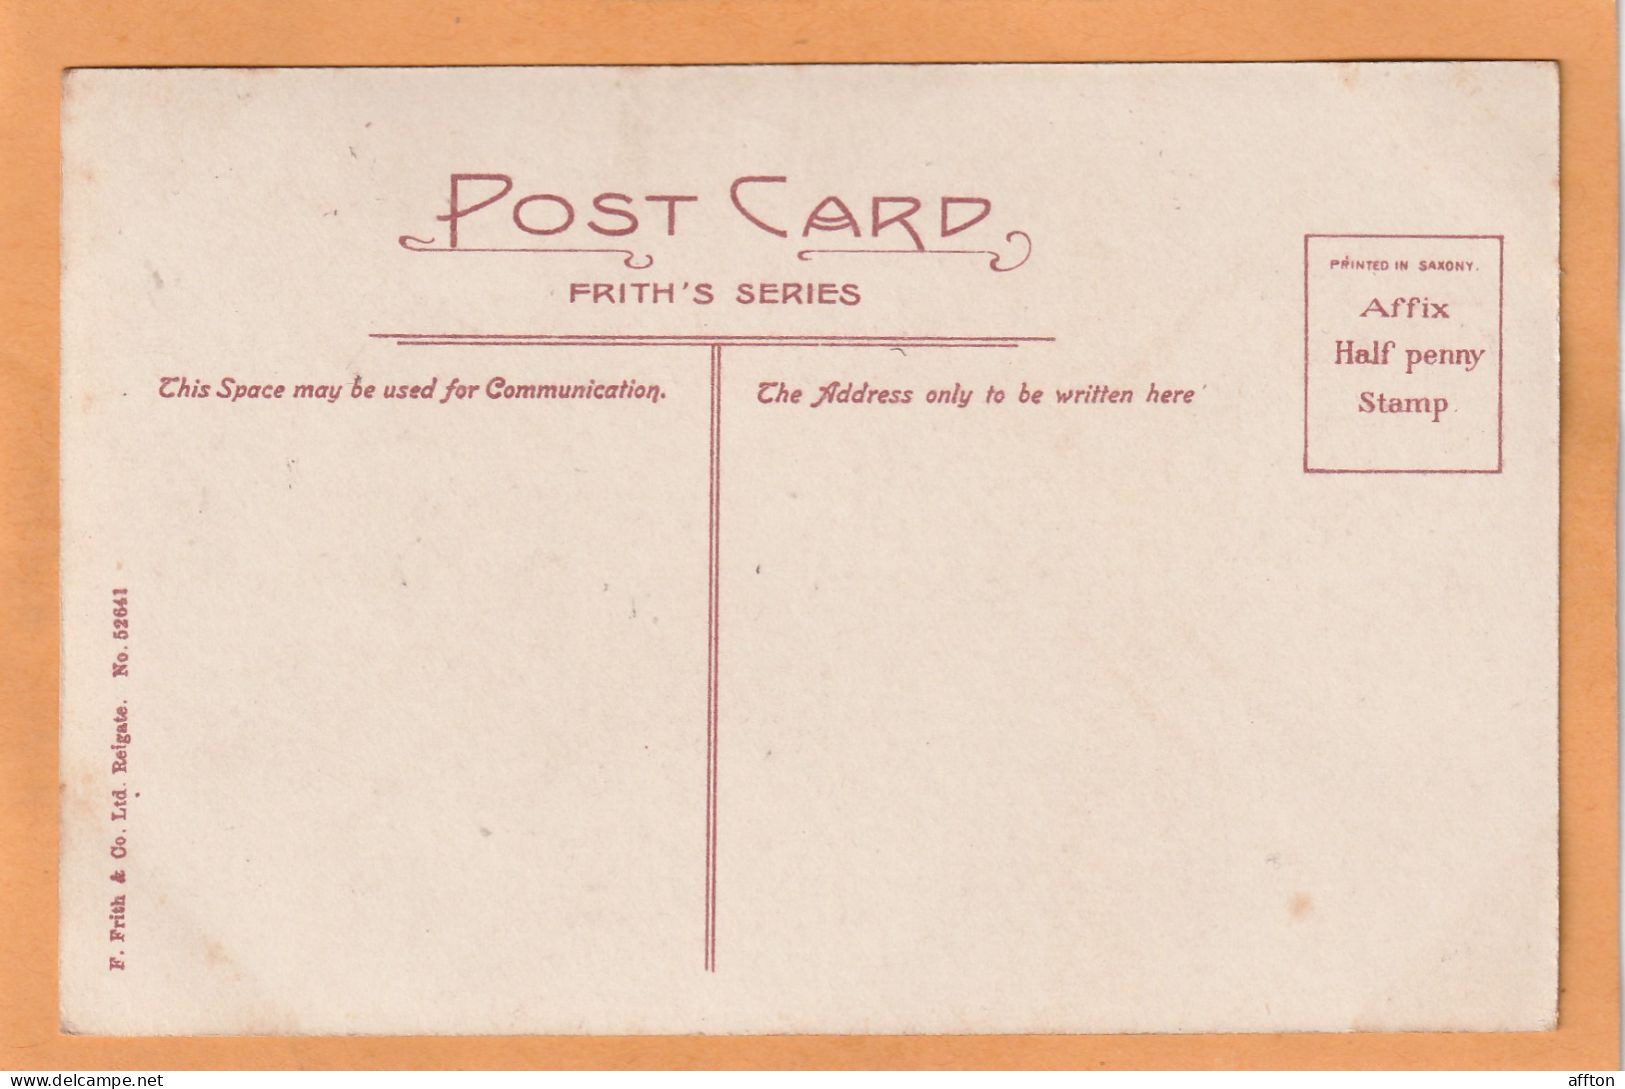 Greenock UK 1906 Postcard - Renfrewshire